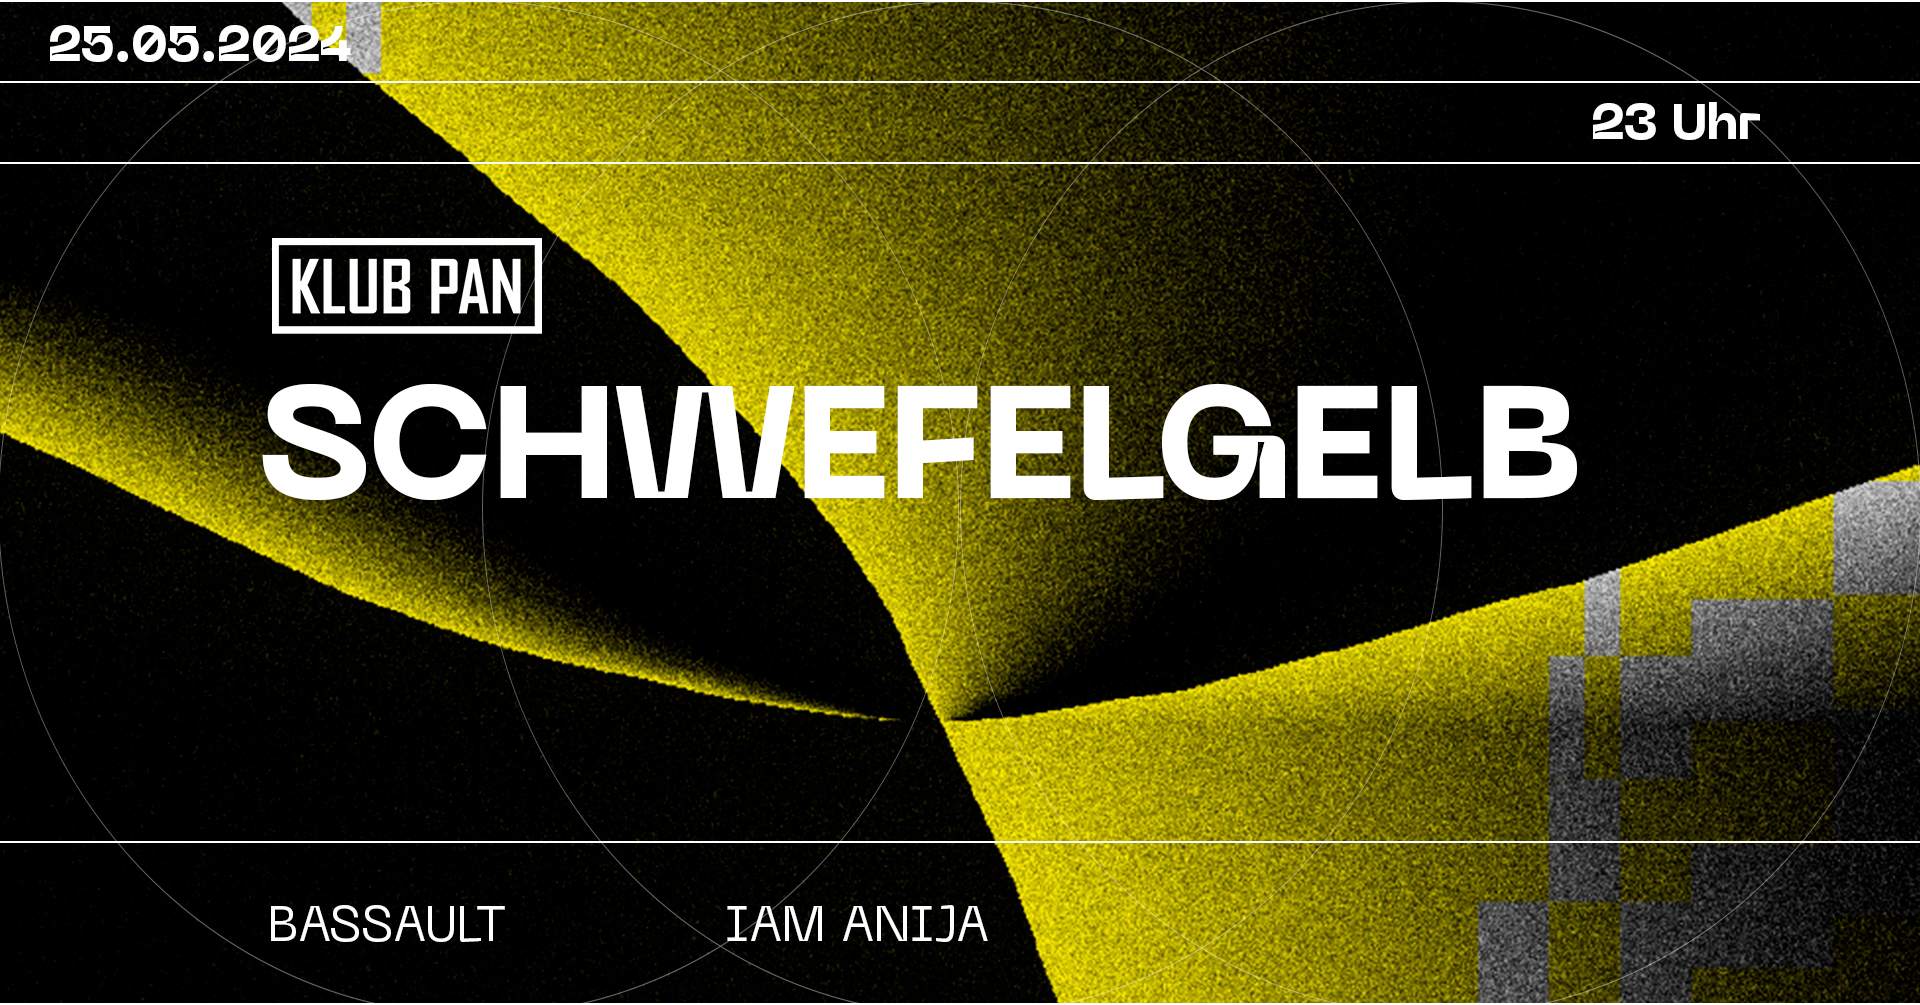 PAN x Schwefelgelb - フライヤー表